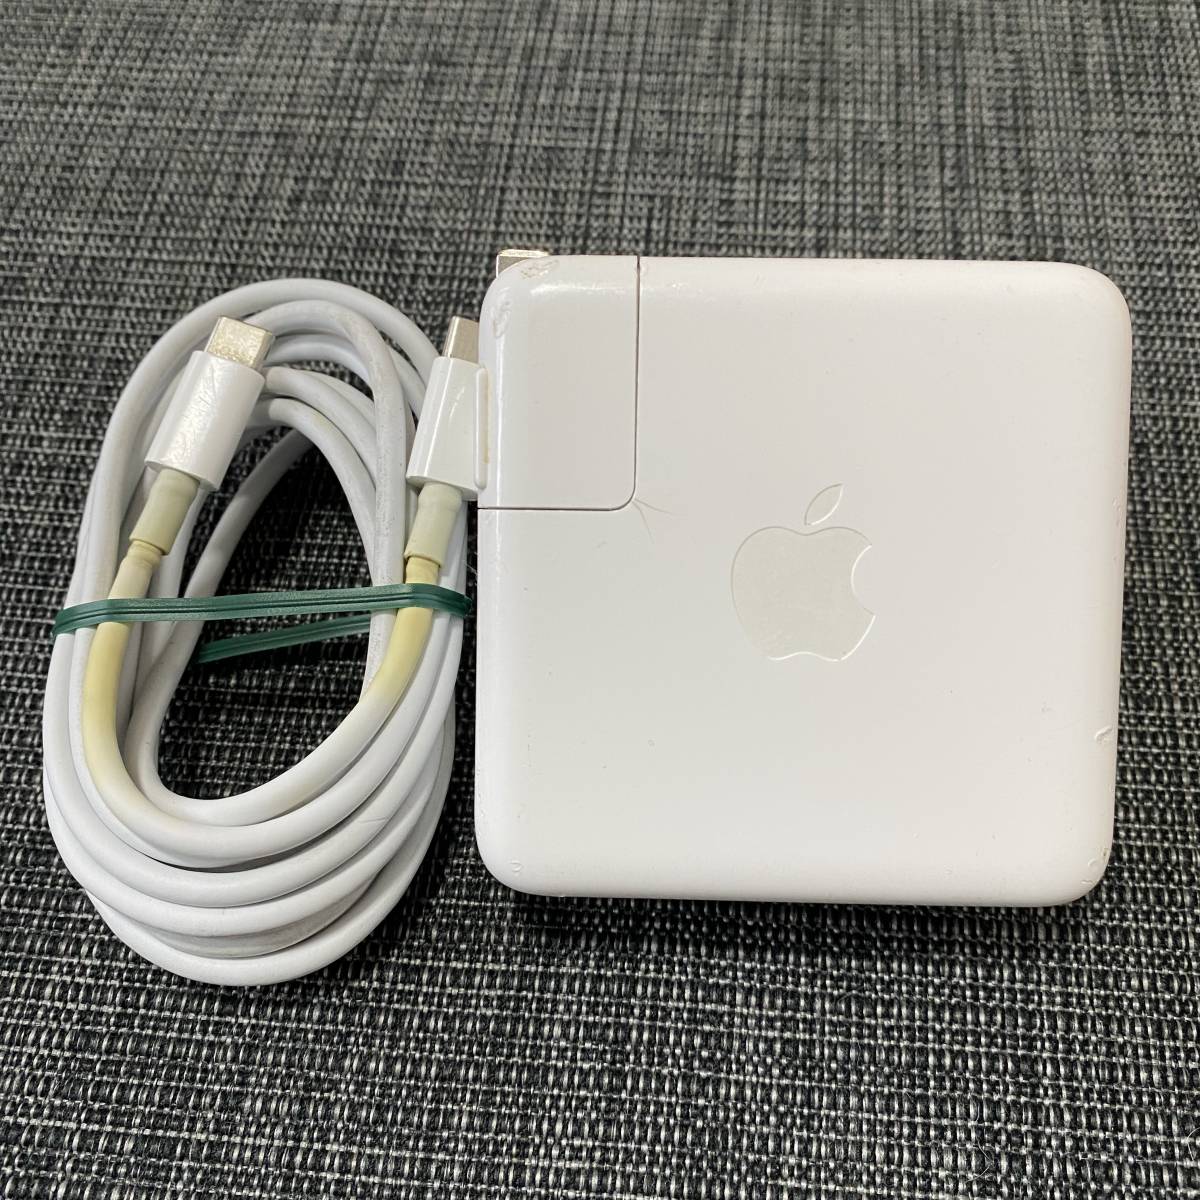 【動作OK☆彡】Apple 純正 61W USB Type-C Power Adapter A1947 MacBook ACアダプター 動作品_画像1